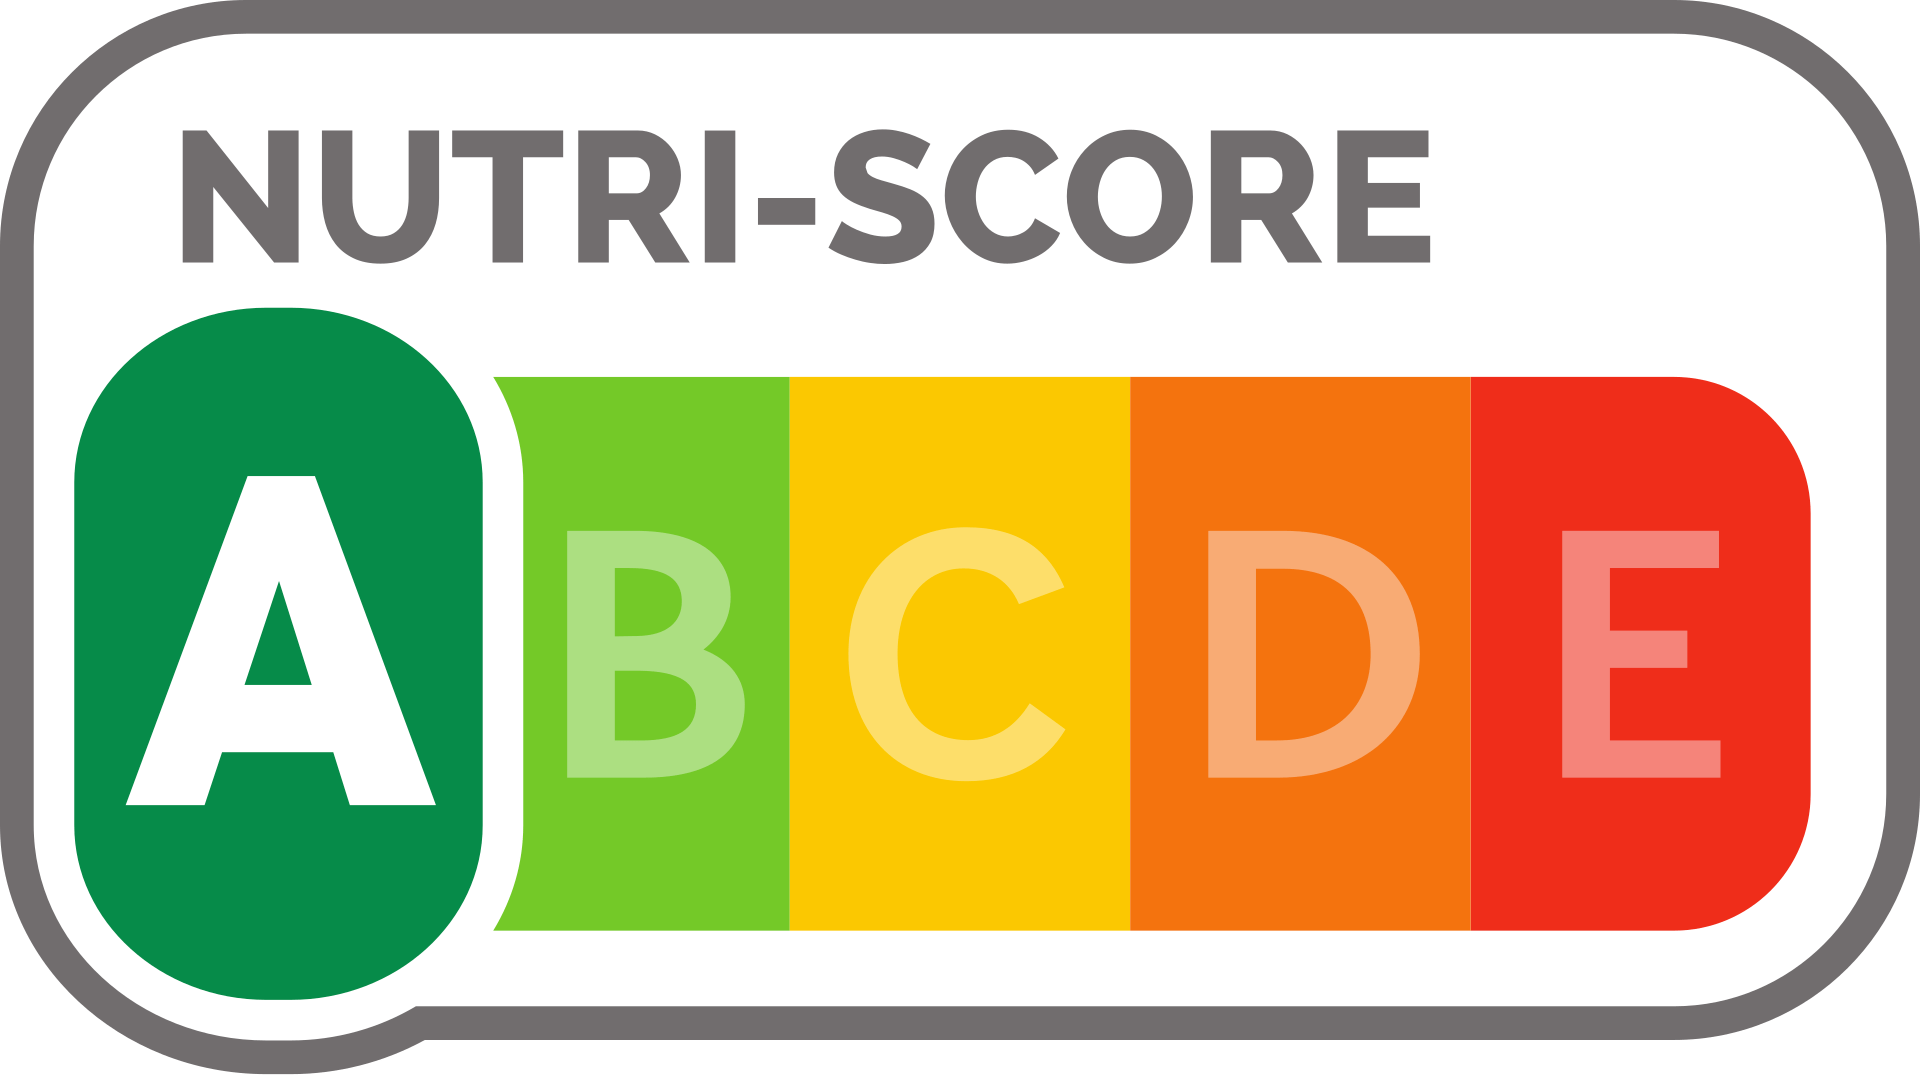 Nutri-Score-Kennzeichnung mit den (farblichen) Noten von A (grün) bis E (rot). (Bildquelle: Wikipedia.org ; Public Domain Lizenz)